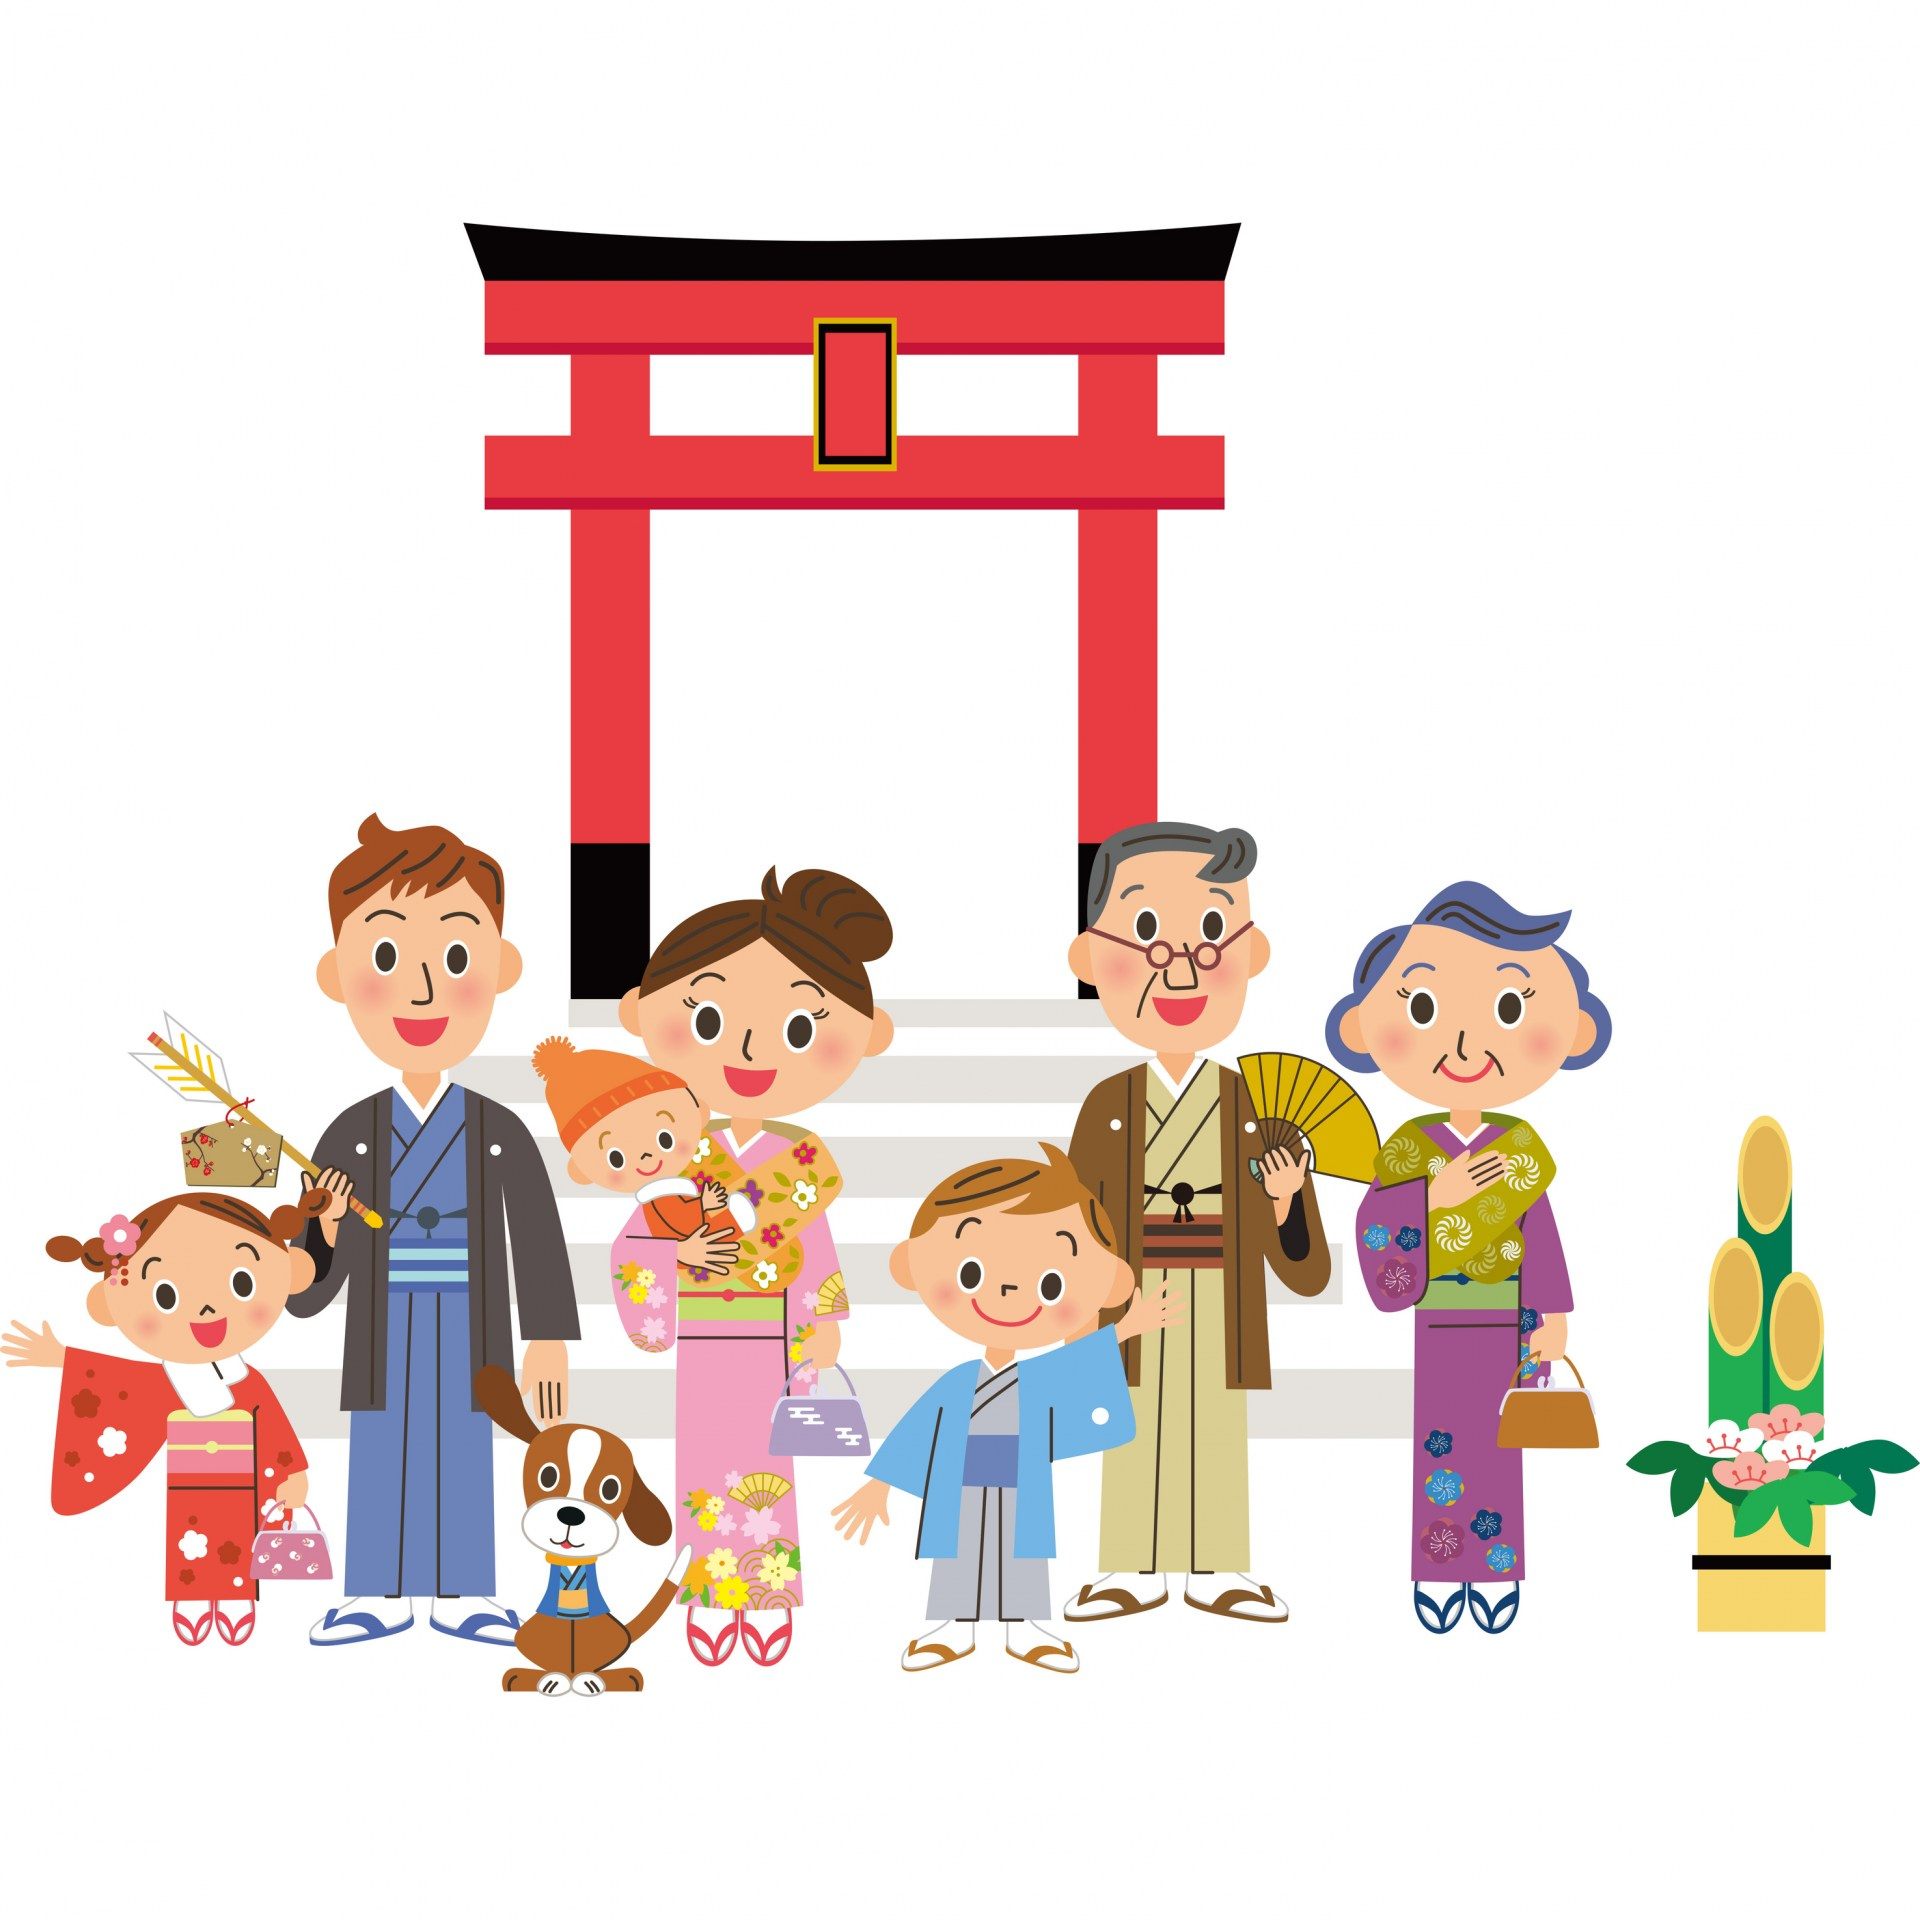 日本新年的传统习惯 初诣 好运日本行